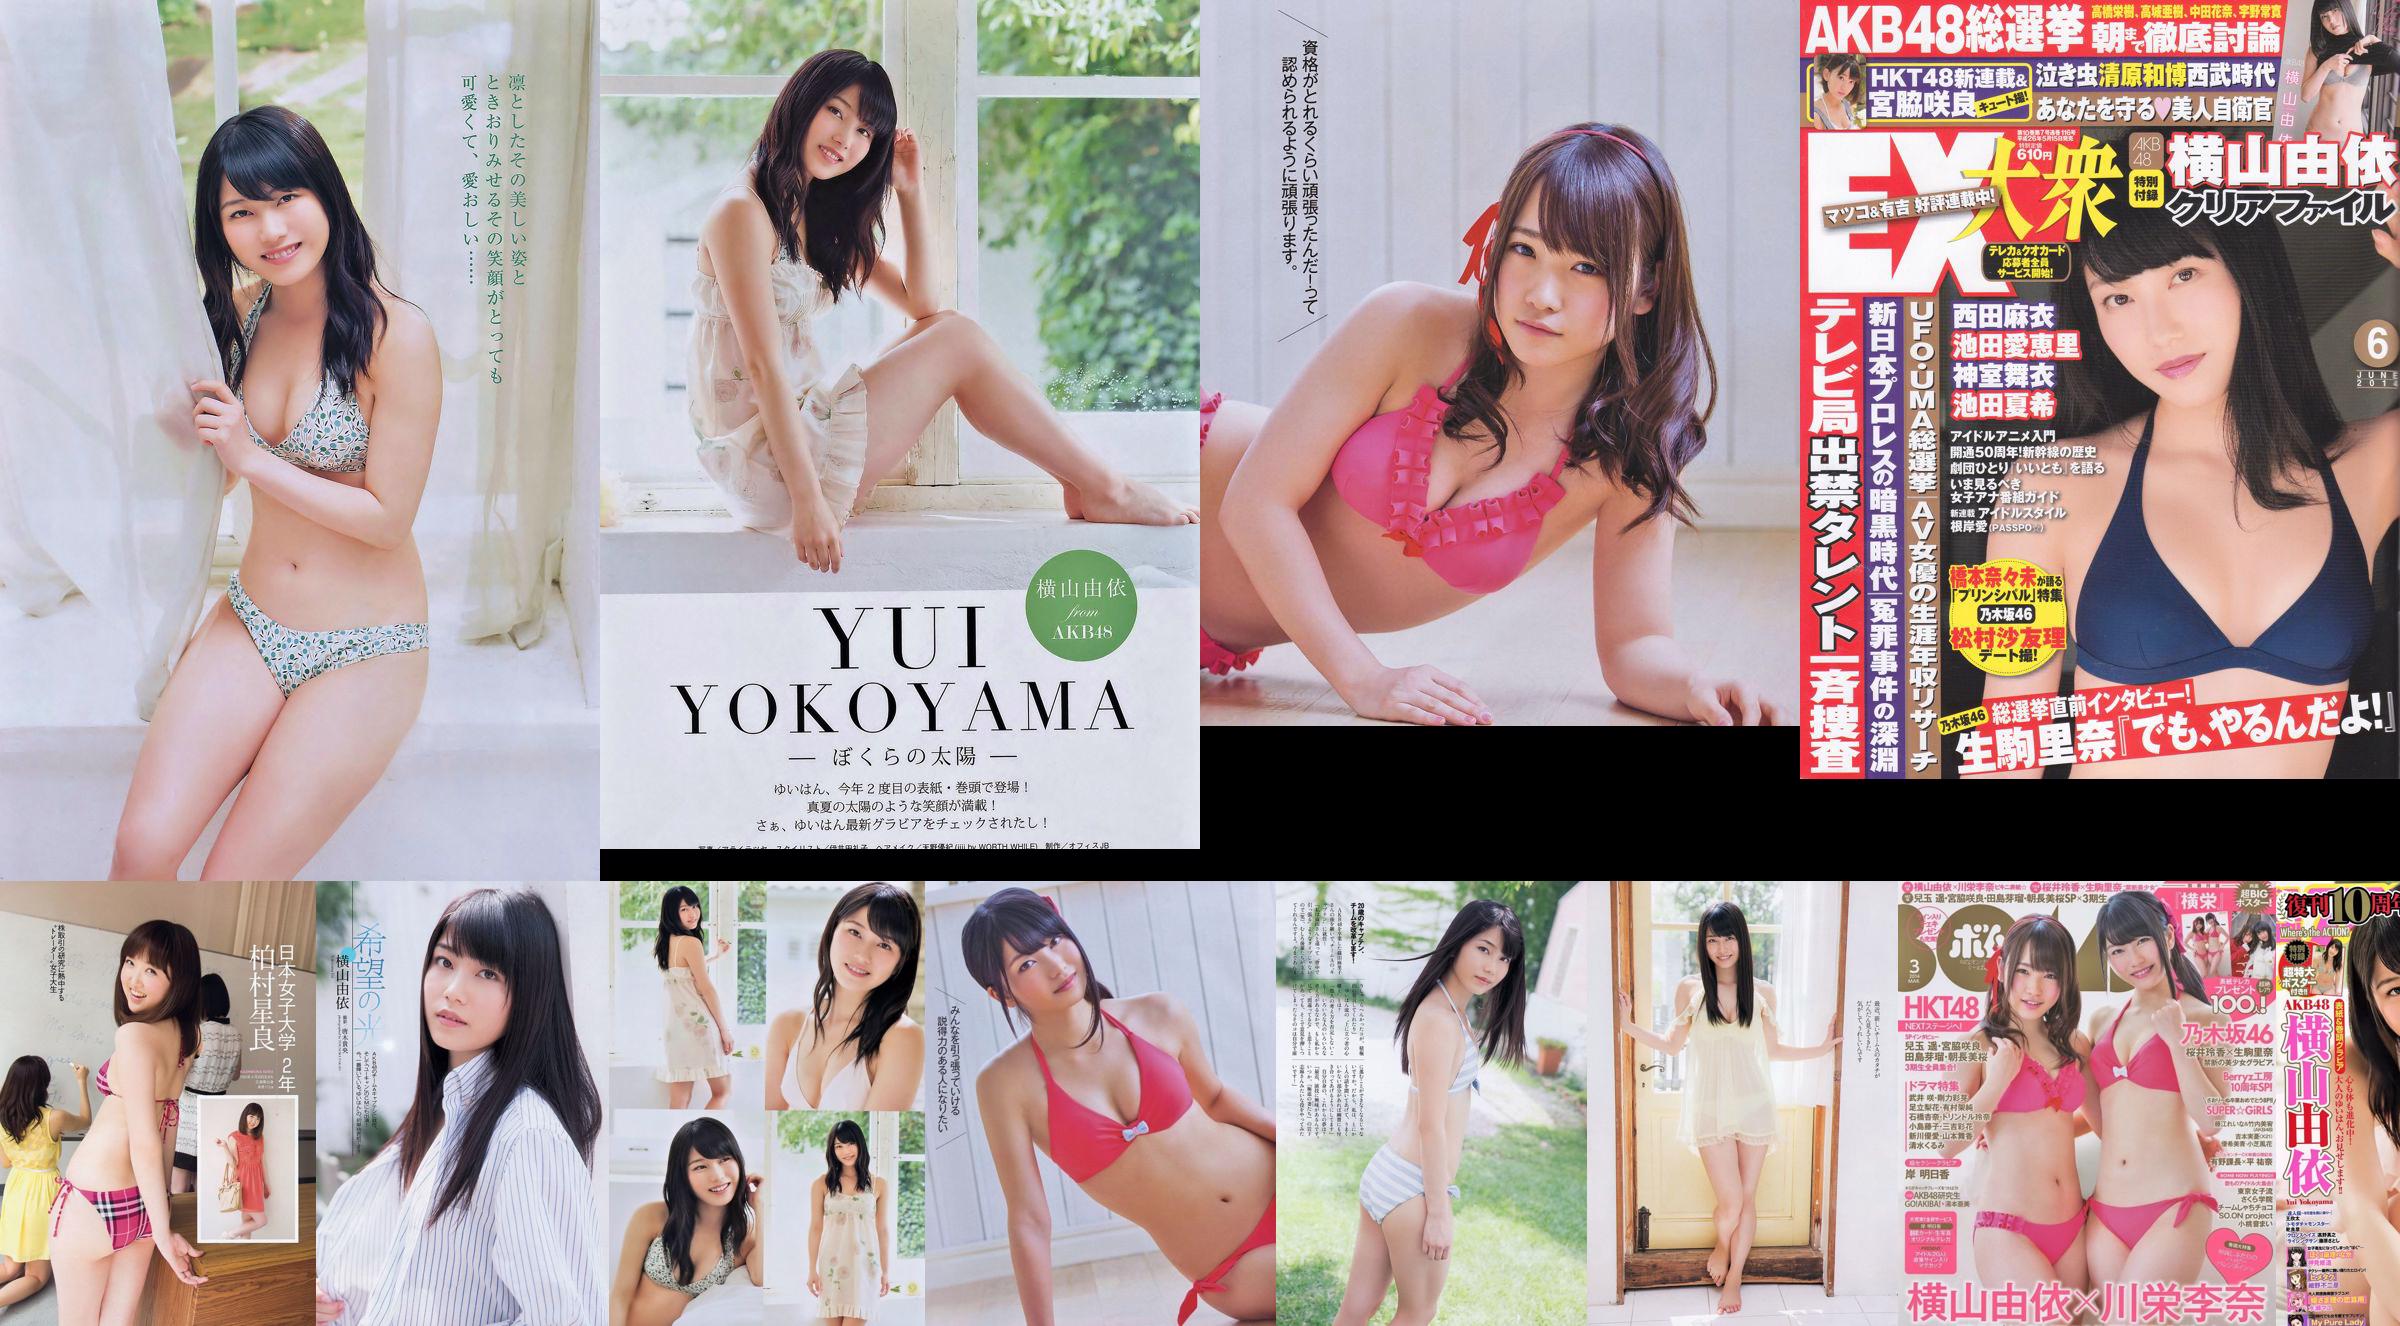 Yui Yokoyama Nozomi Sasaki Rina Koike Asuka Kuramochi Miwako Kakei Risa Yoshiki Ruri Shinato [Weekly Playboy] 2013 No.38 Ảnh No.5c039c Trang 3